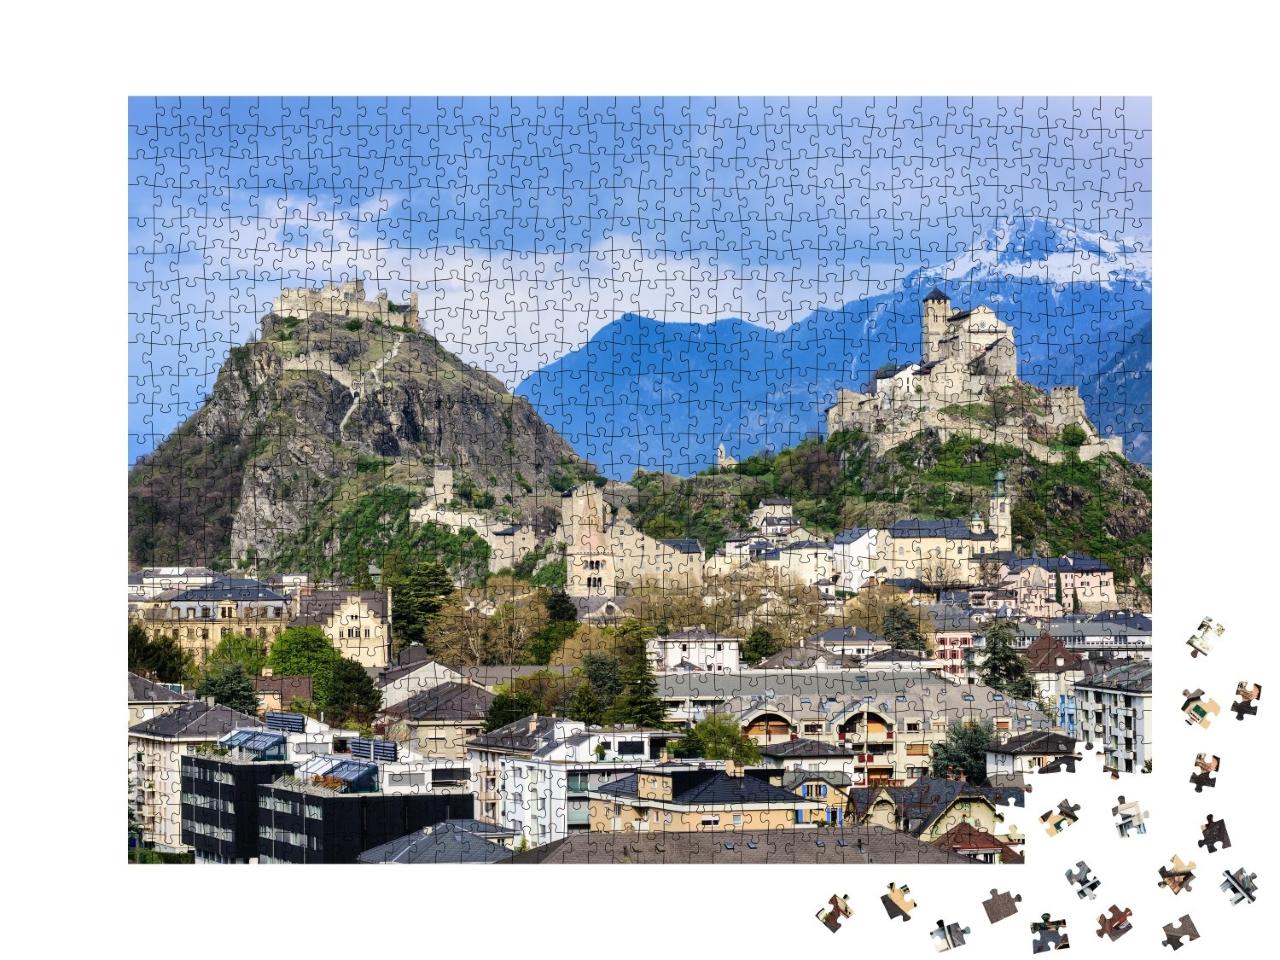 Puzzle de 1000 pièces « La ville historique de Sion et ses deux châteaux »